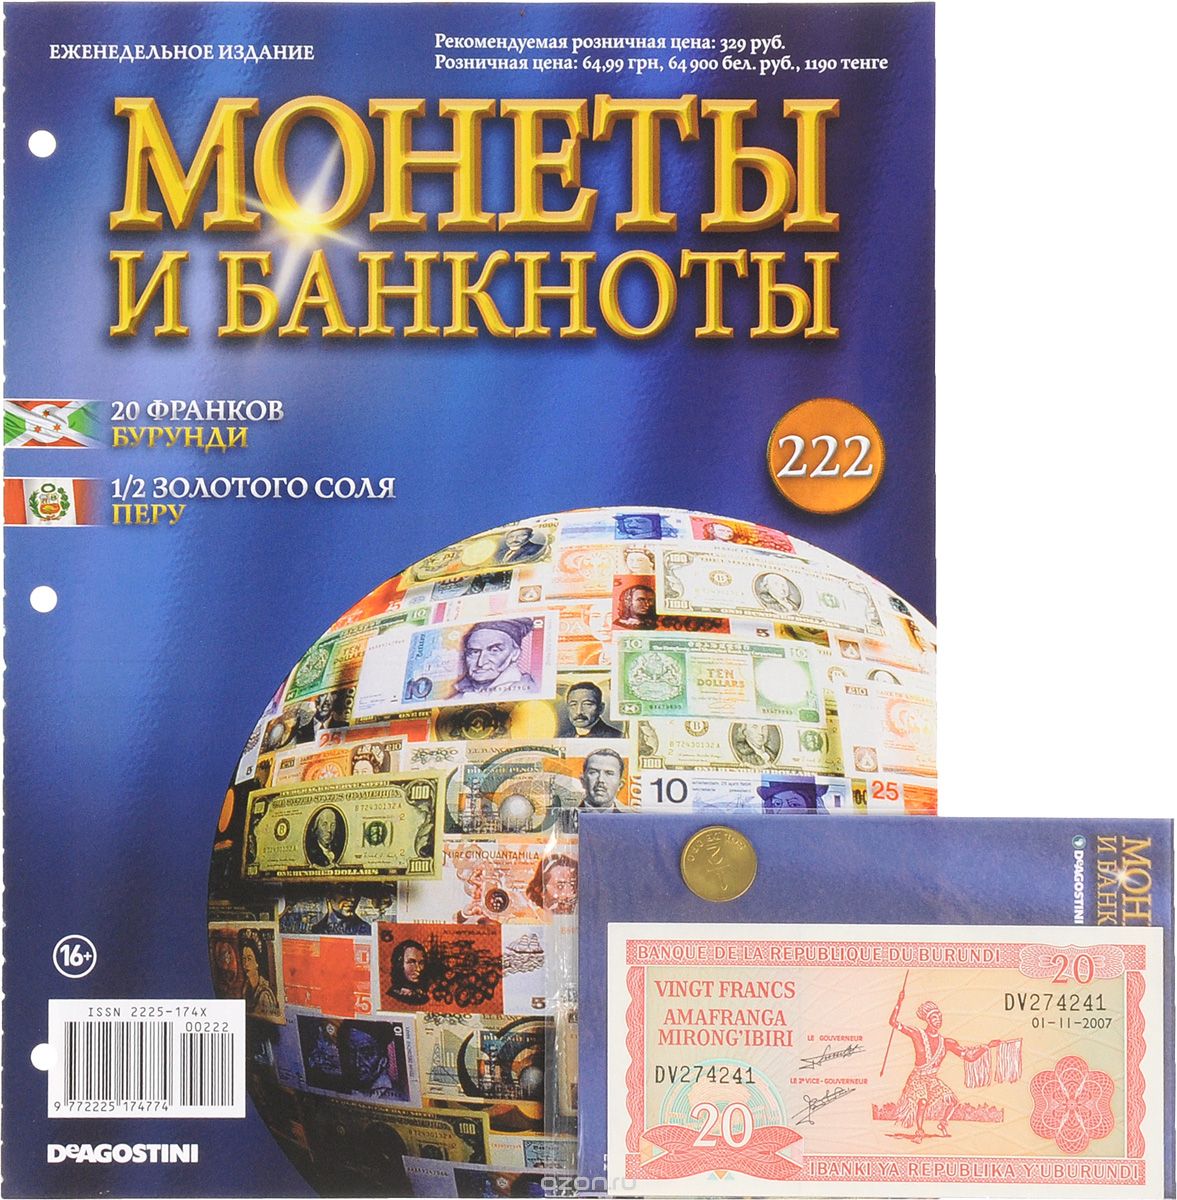 Скачать книгу "Журнал "Монеты и банкноты" №222"